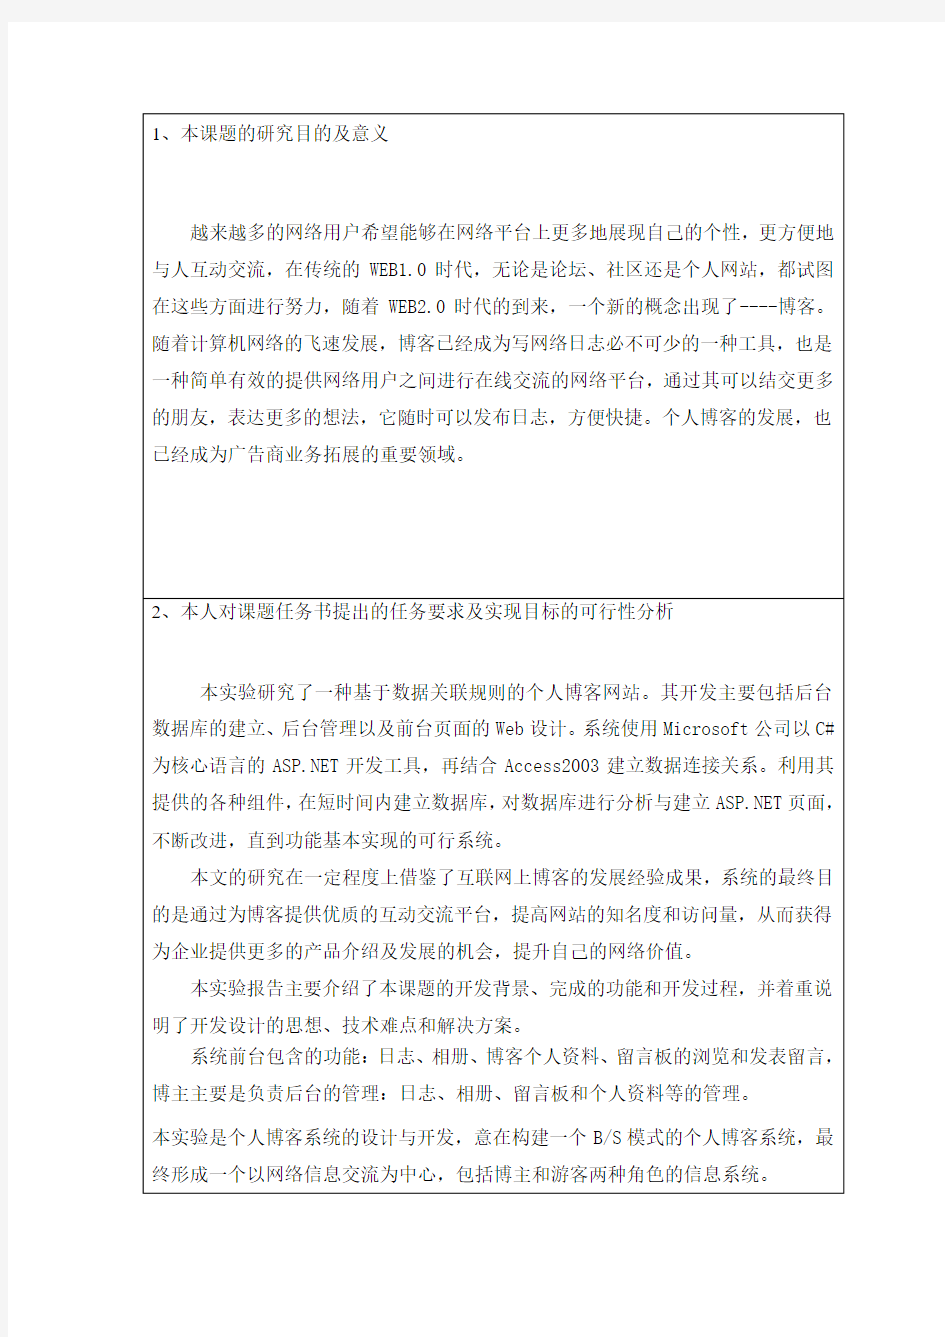 重庆理工大学-毕业设计-小型博客系统-开题报告